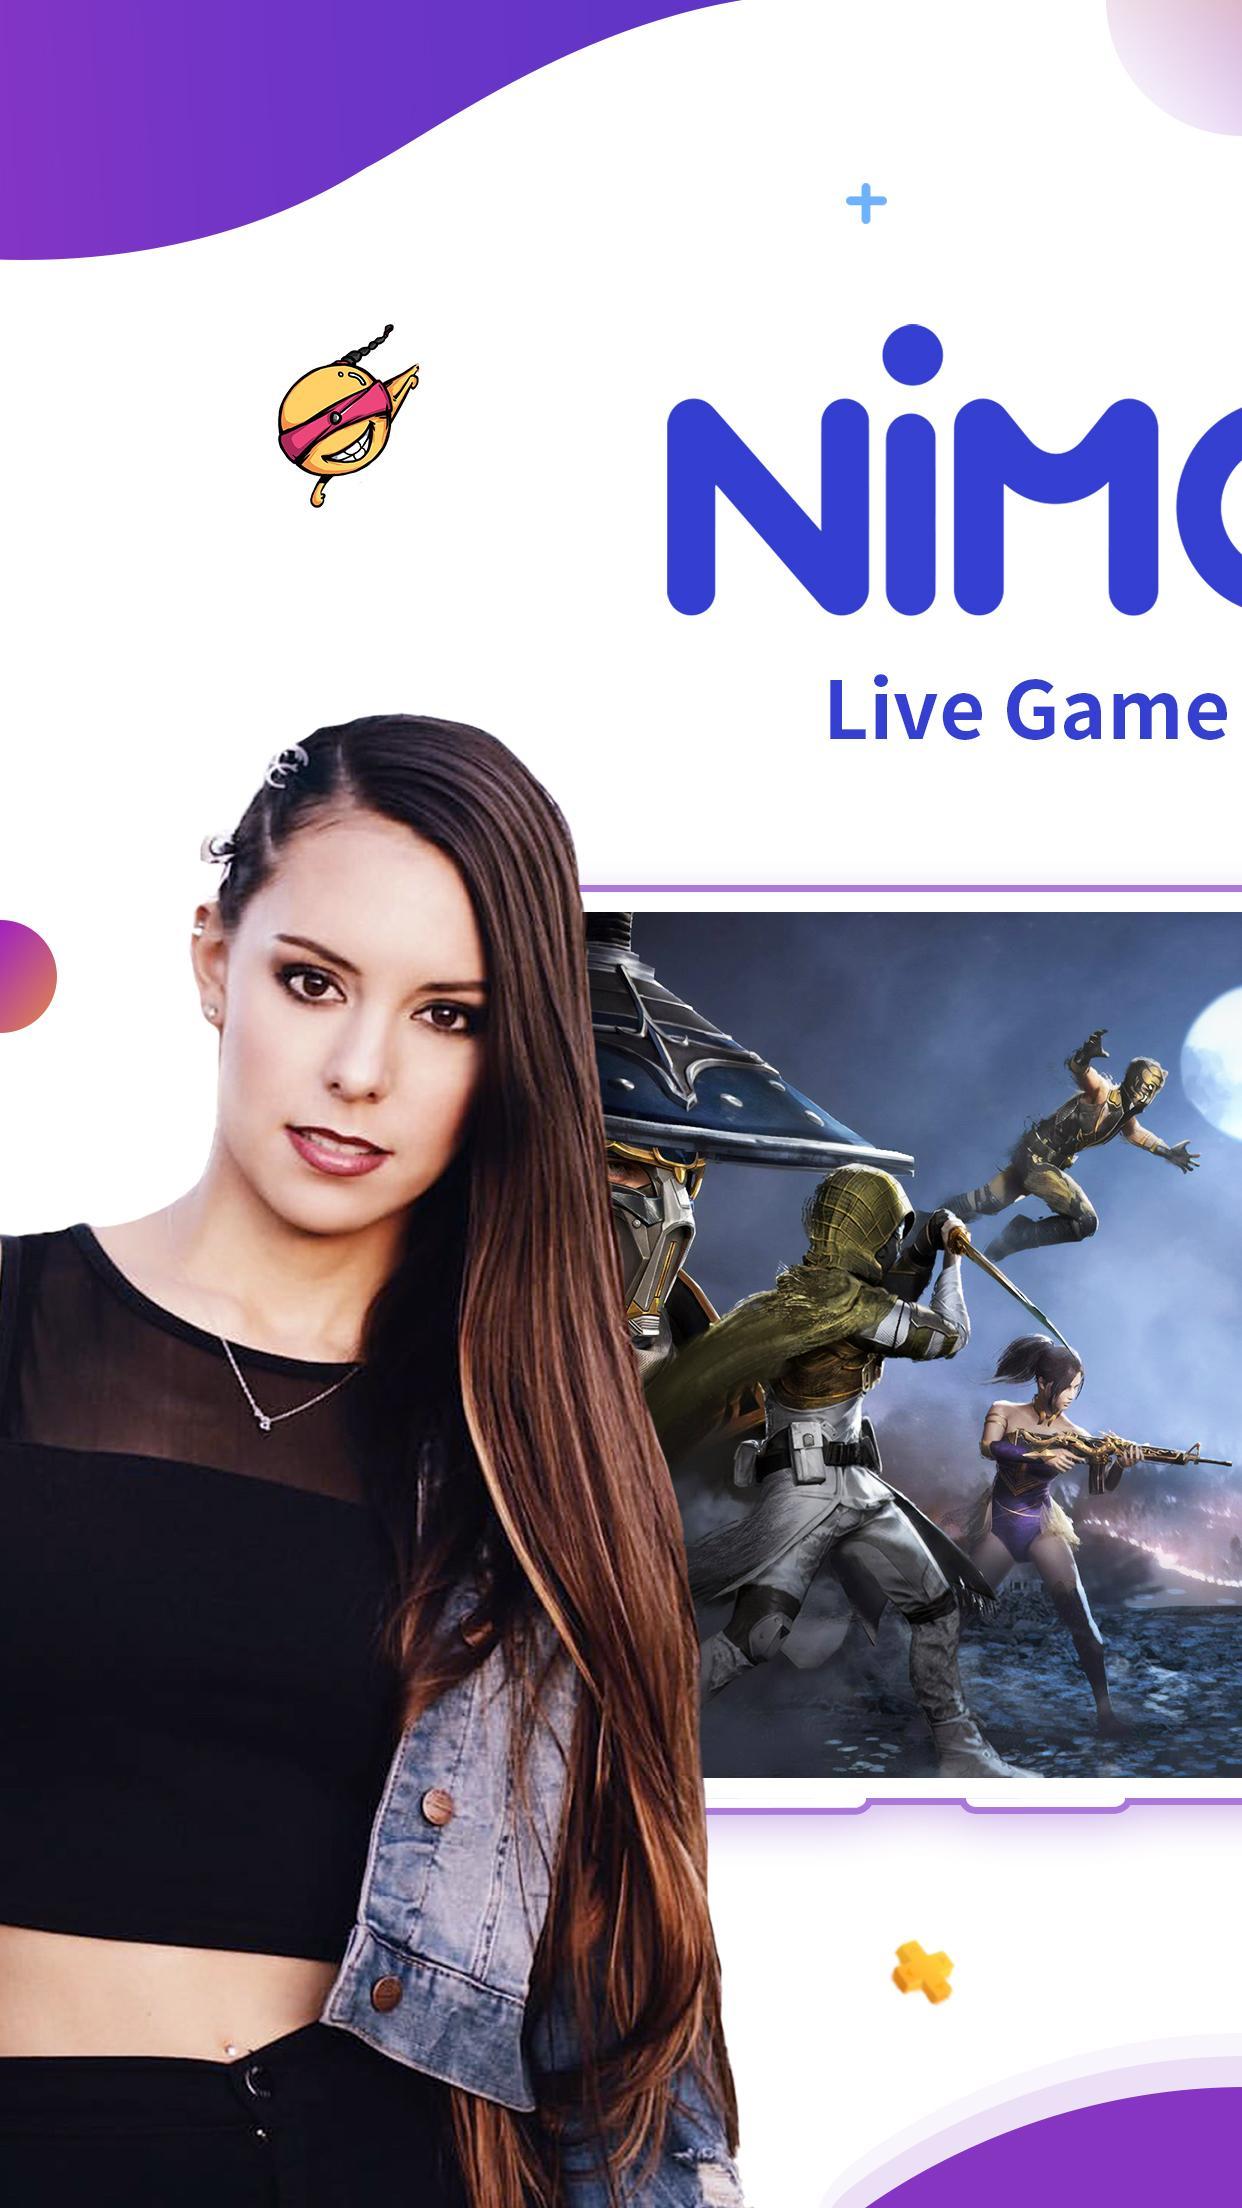 Nimo TV – Live Game Streaming